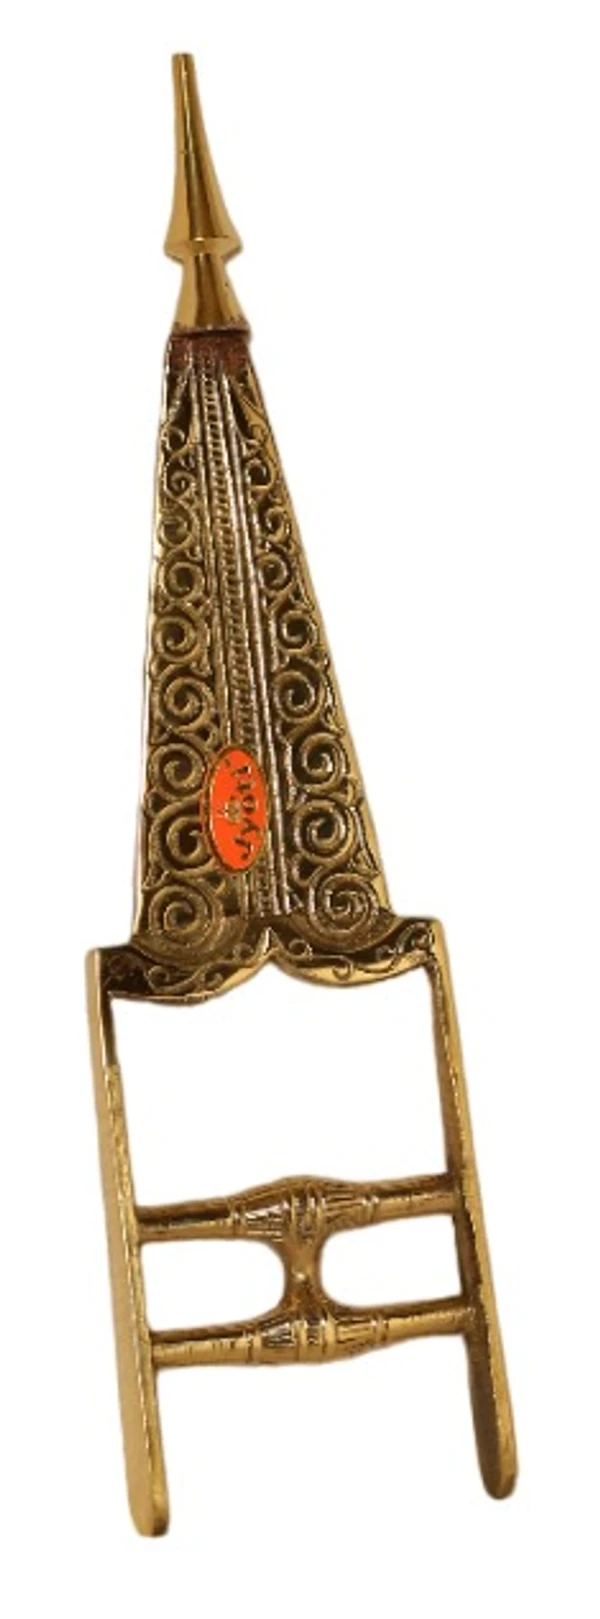 RSH Bak Bhala Indian Art - Weight-0.330gm, Hight-12", Size-1